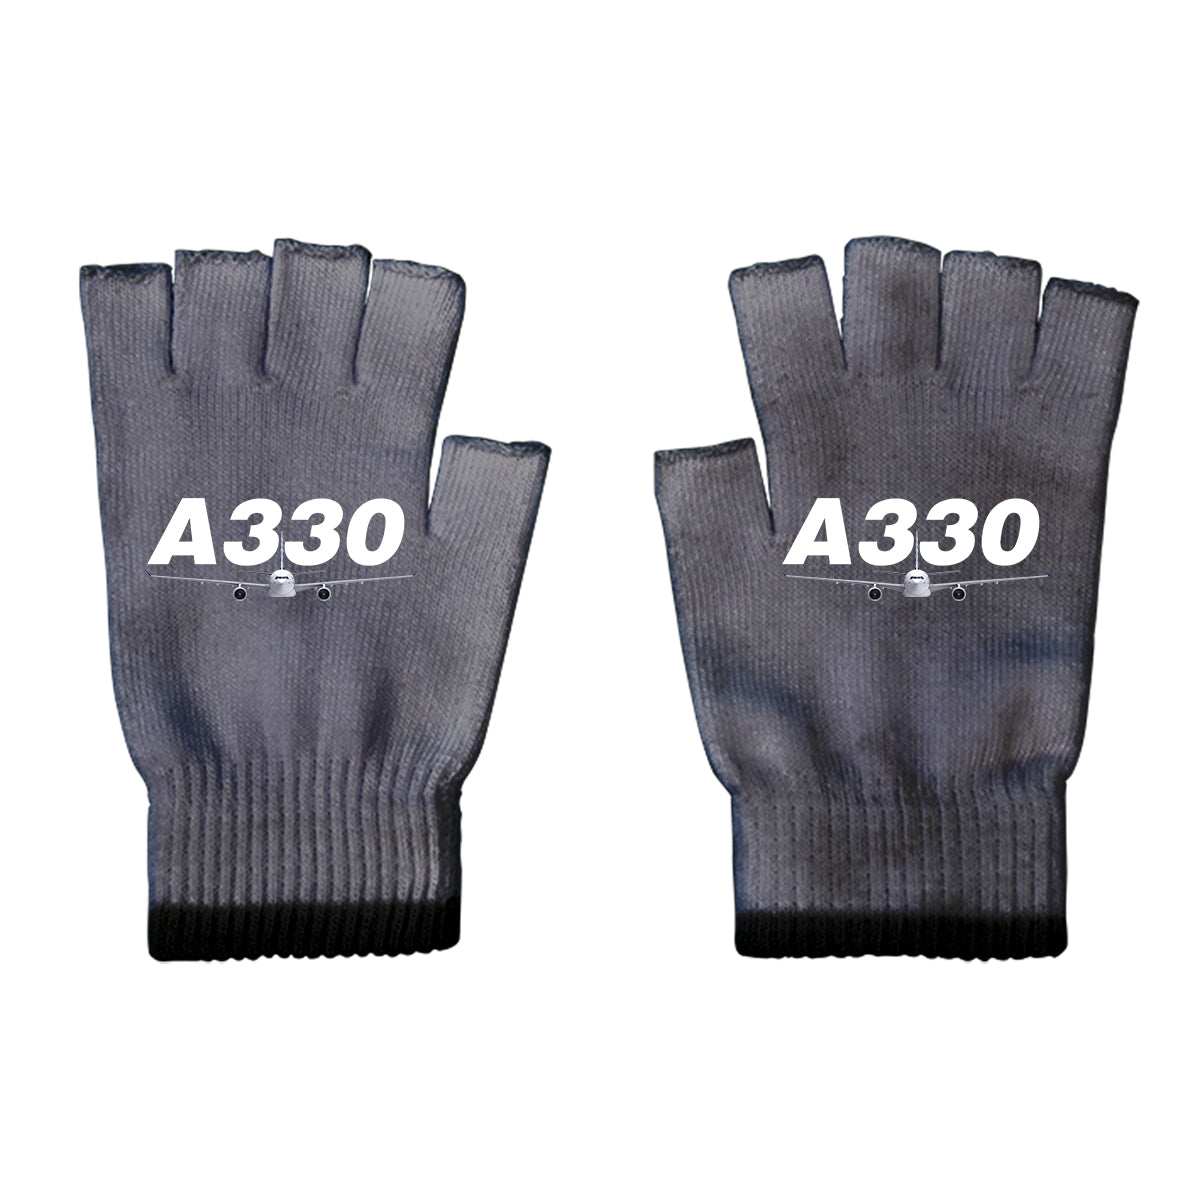 Super Airbus A330 Designed Cut Gloves